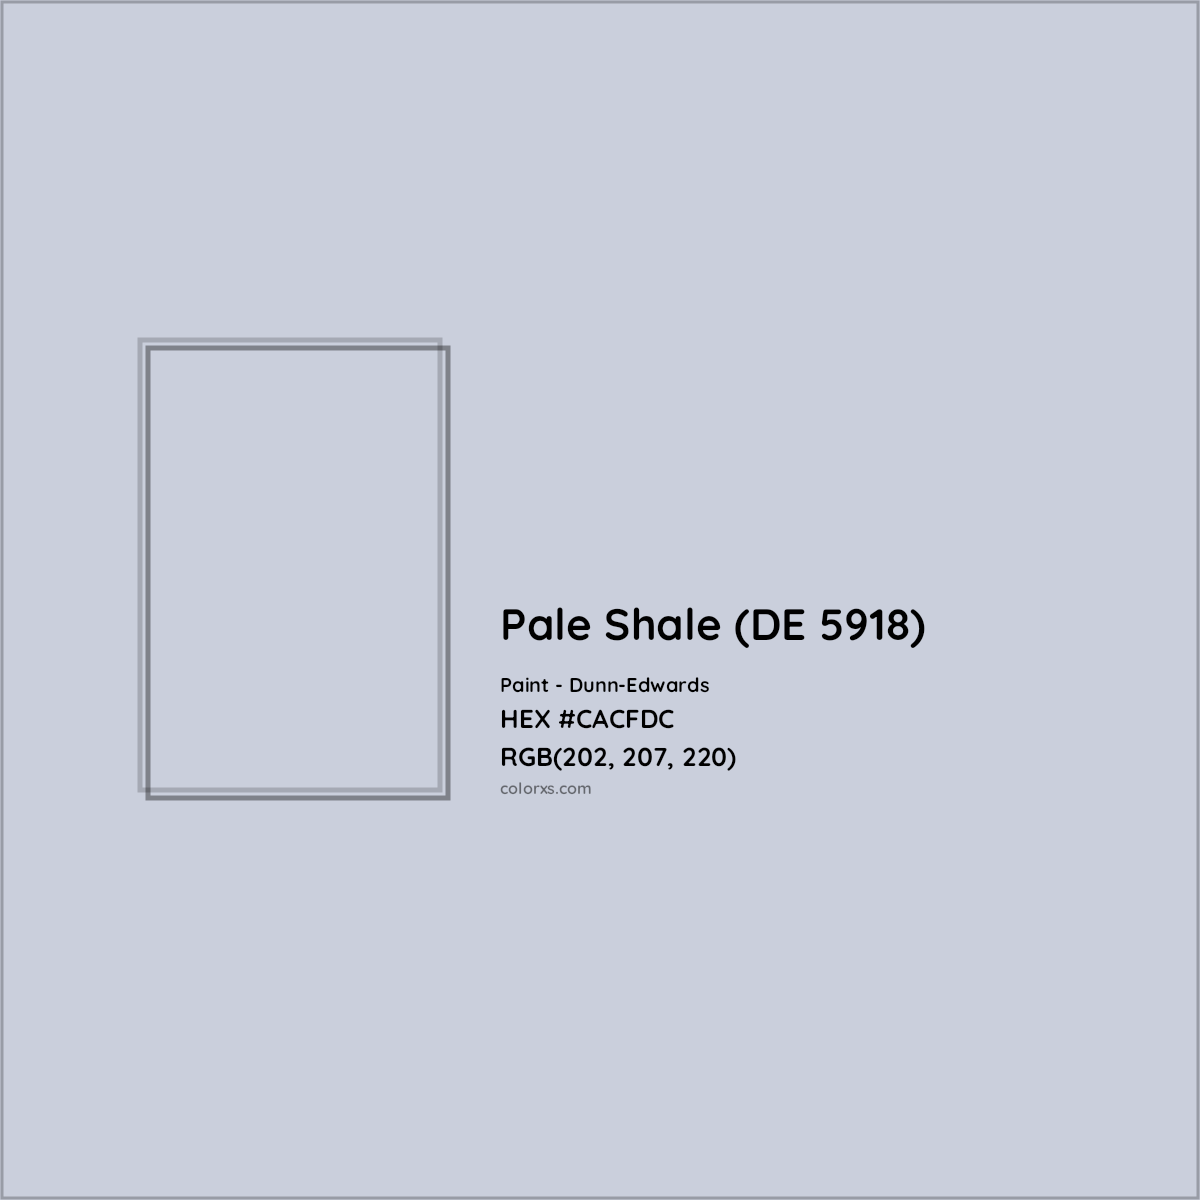 HEX #CACFDC Pale Shale (DE 5918) Paint Dunn-Edwards - Color Code